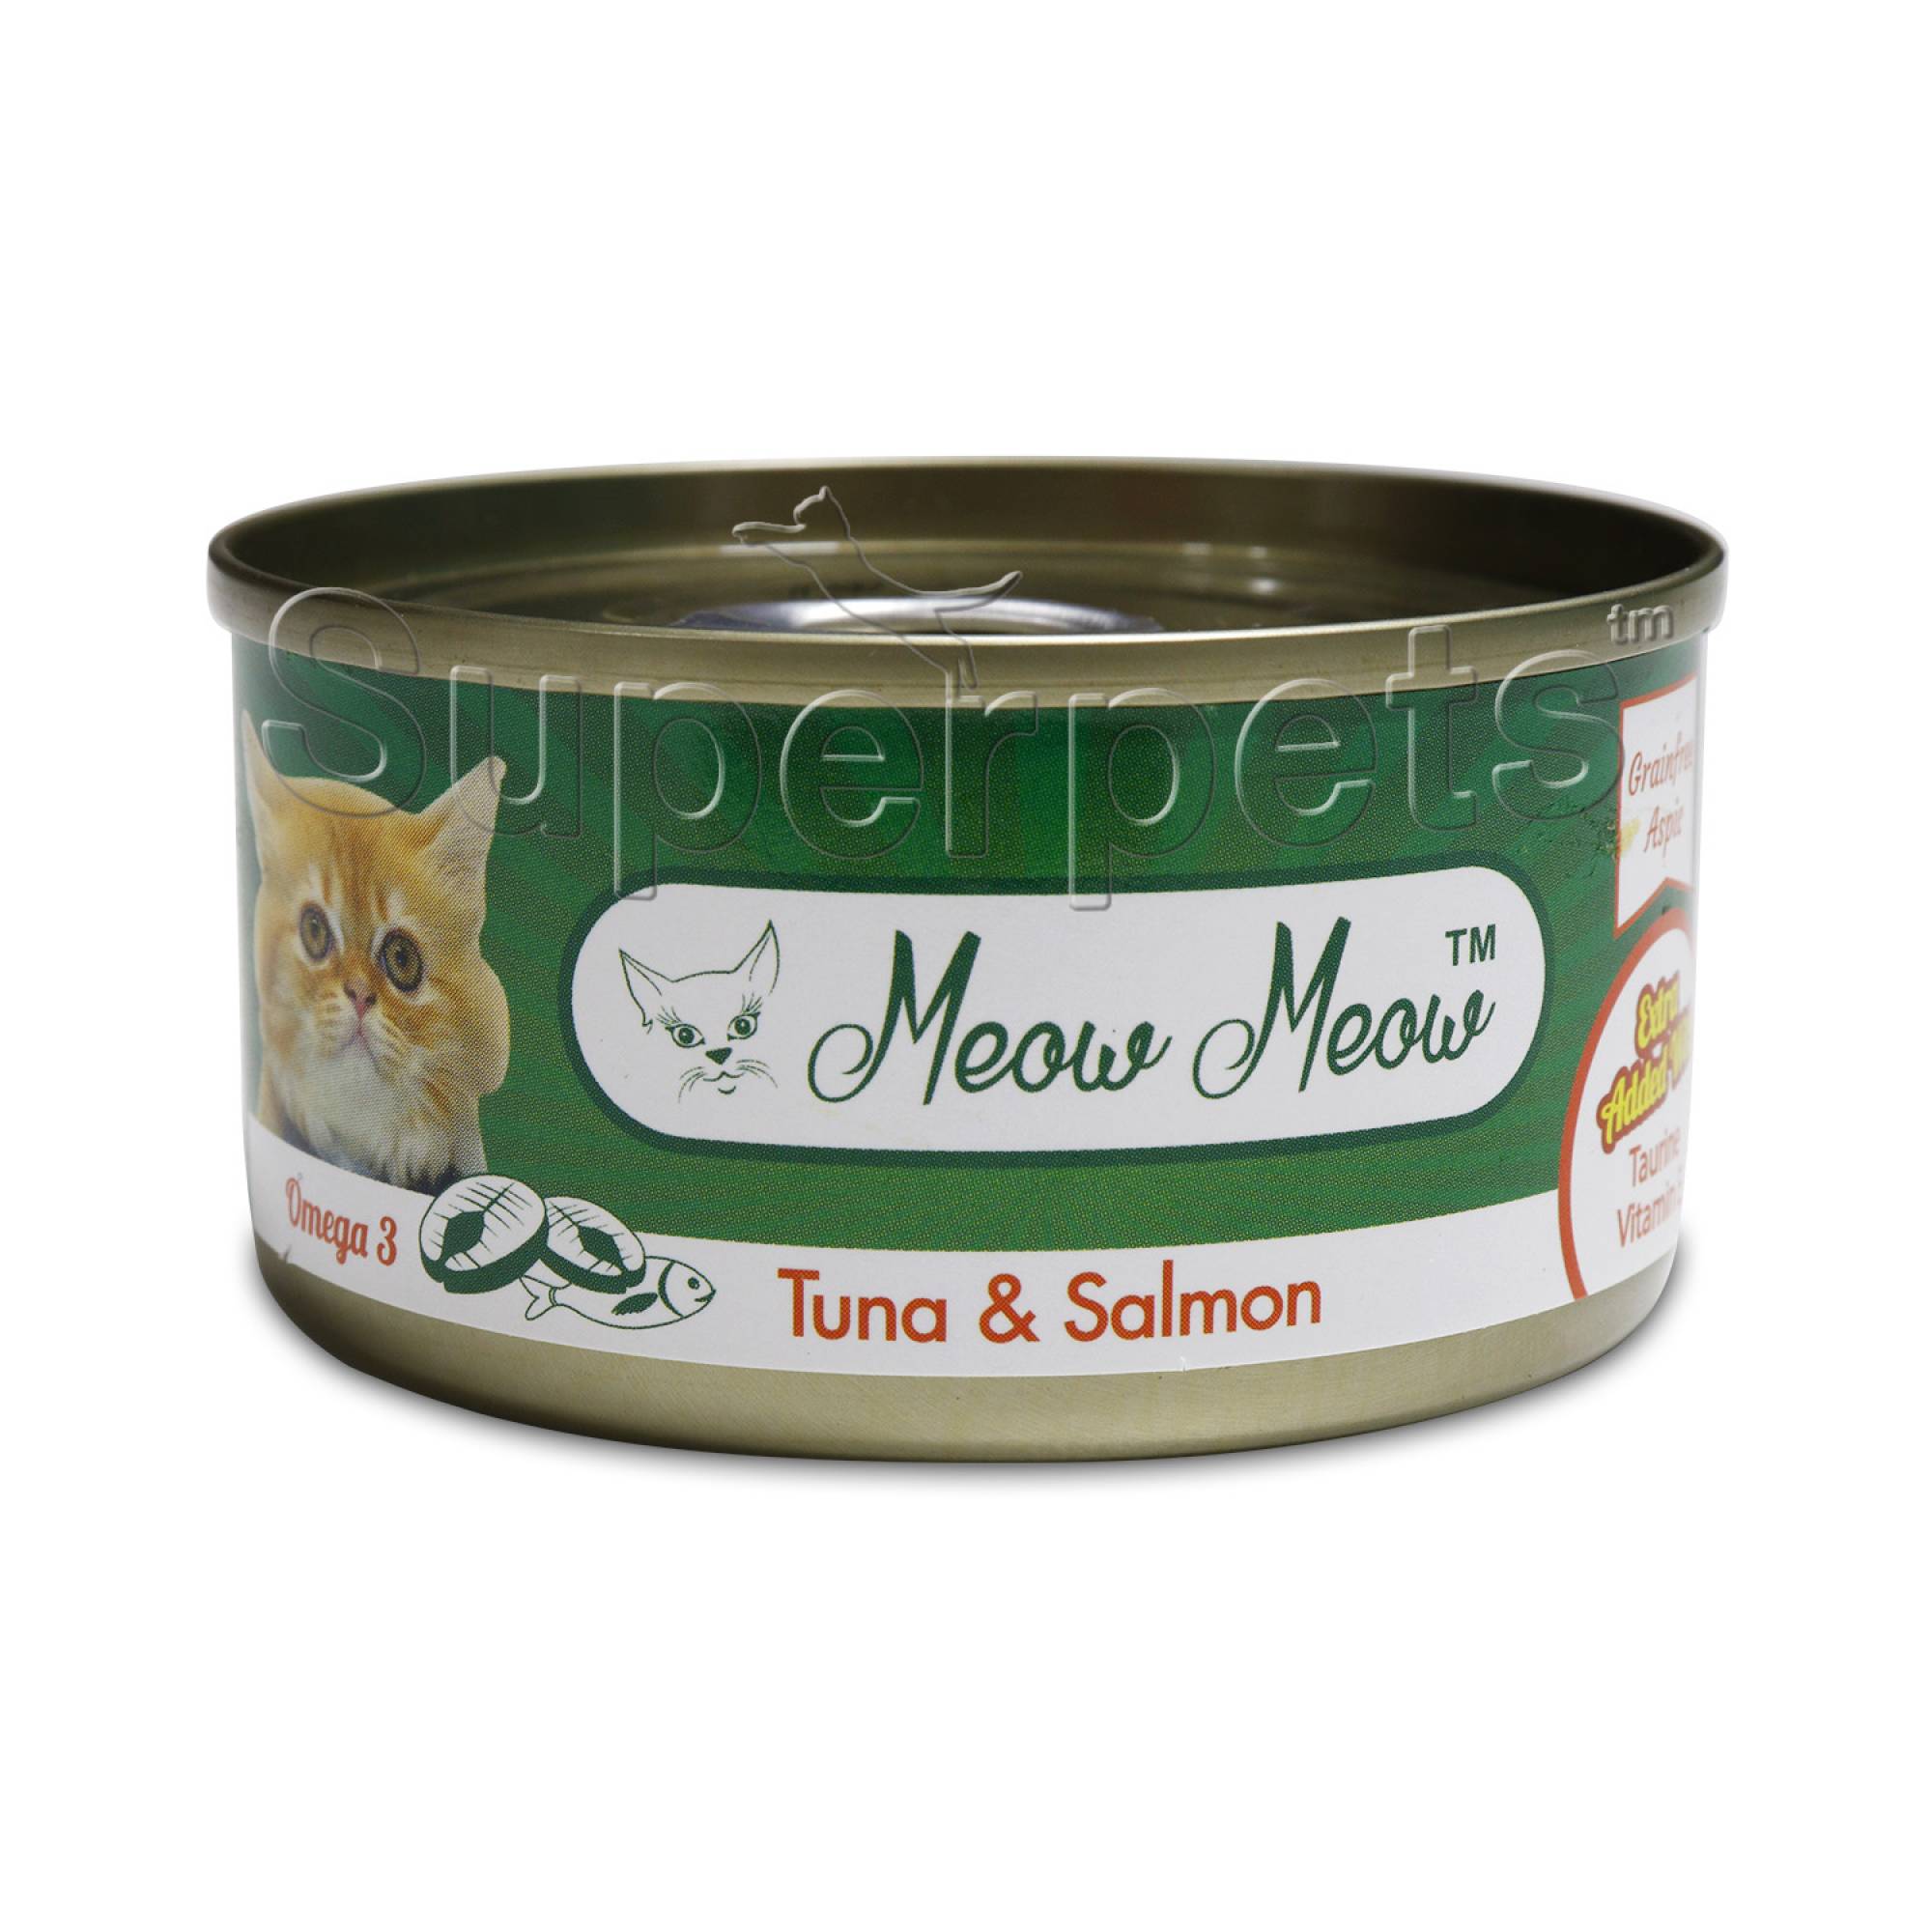 Meow Meow - Tuna & Salmon - Grain Free 80g x 24pcs (1 carton)